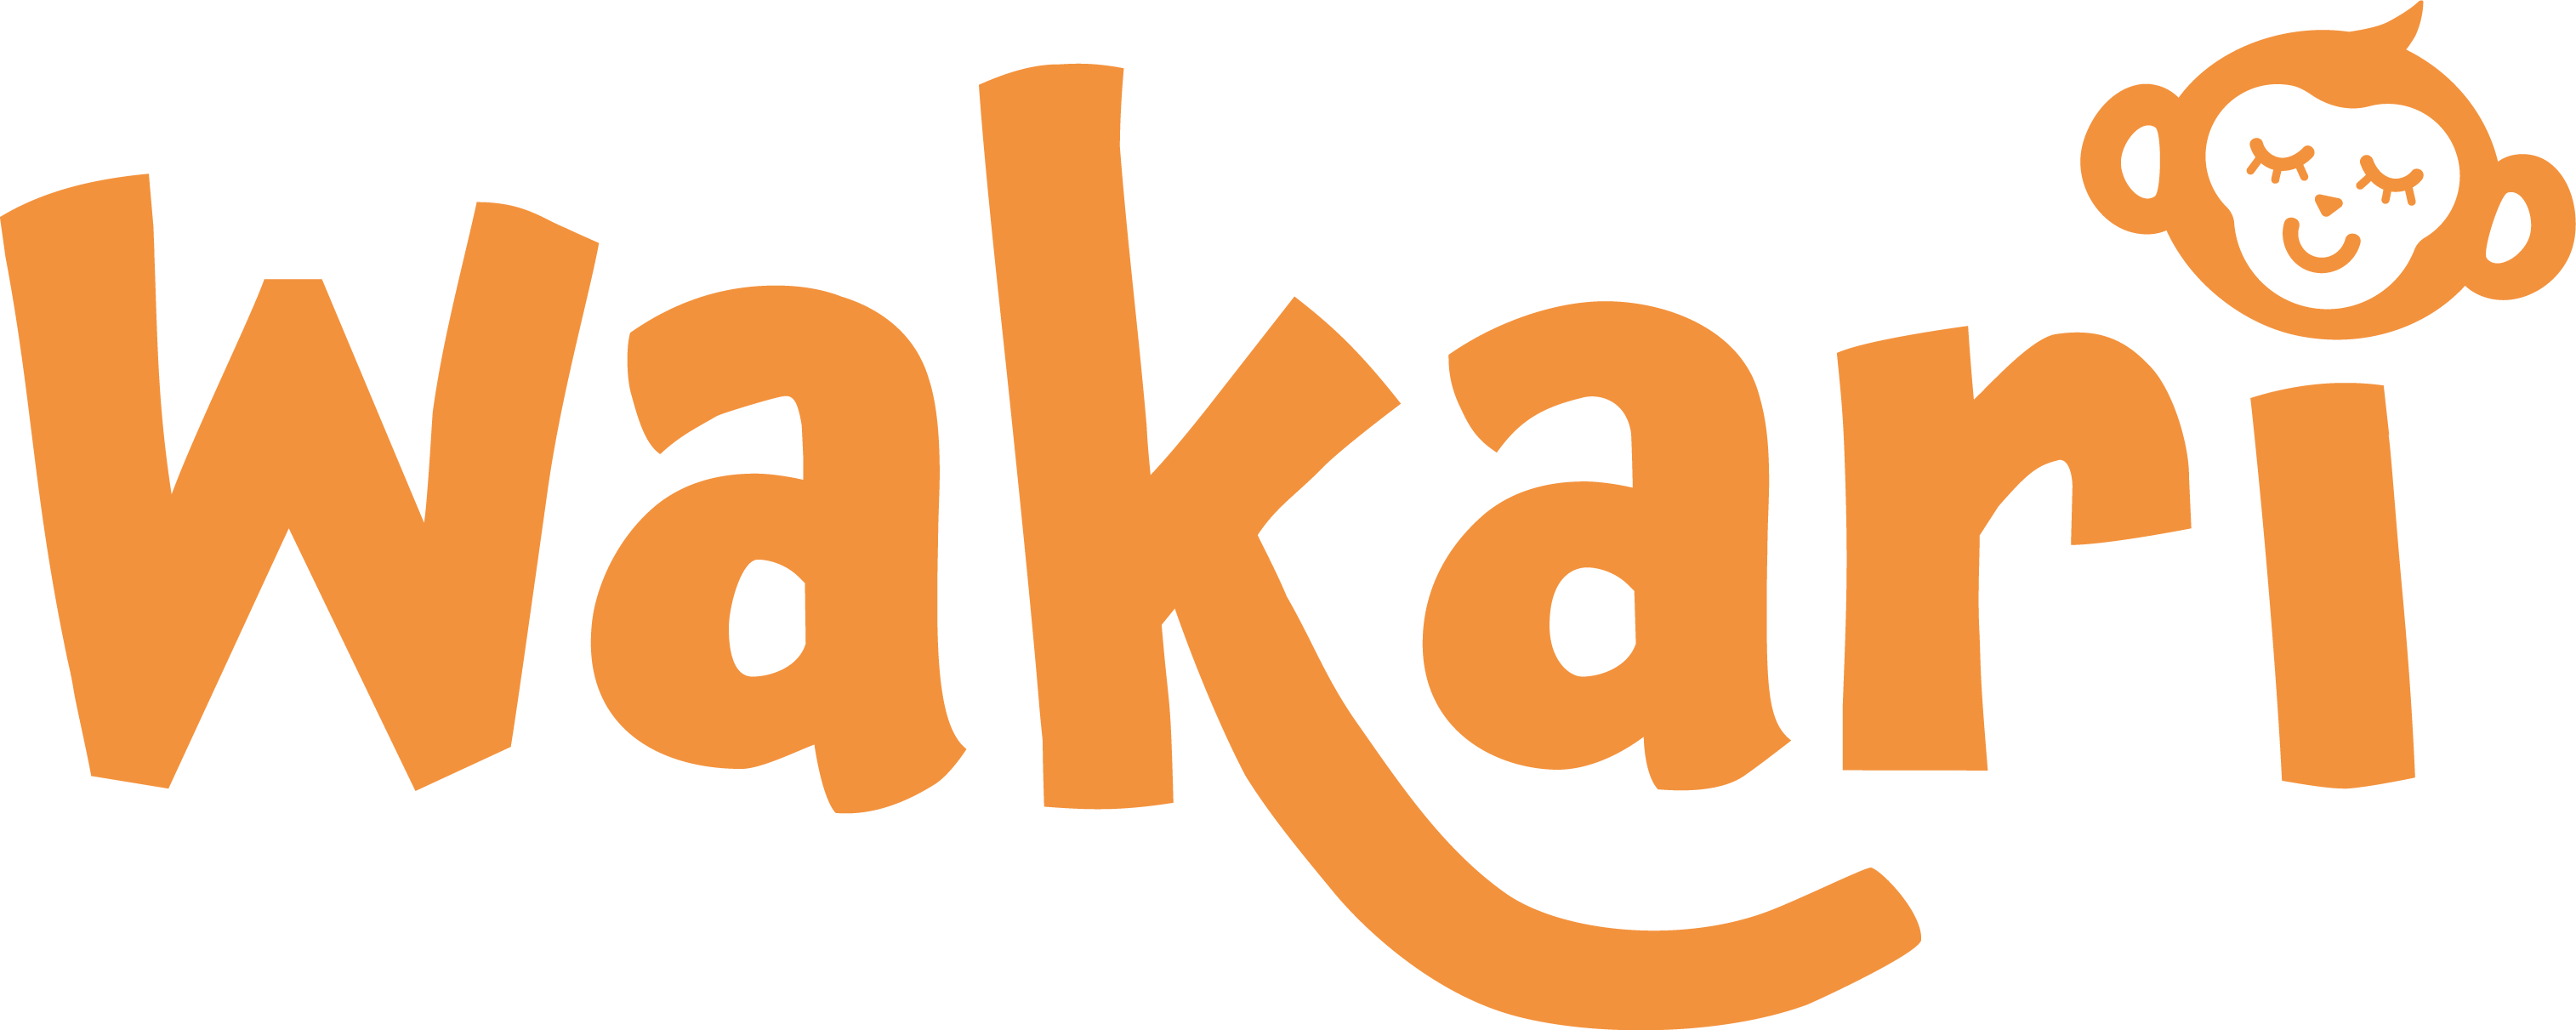 Wakari